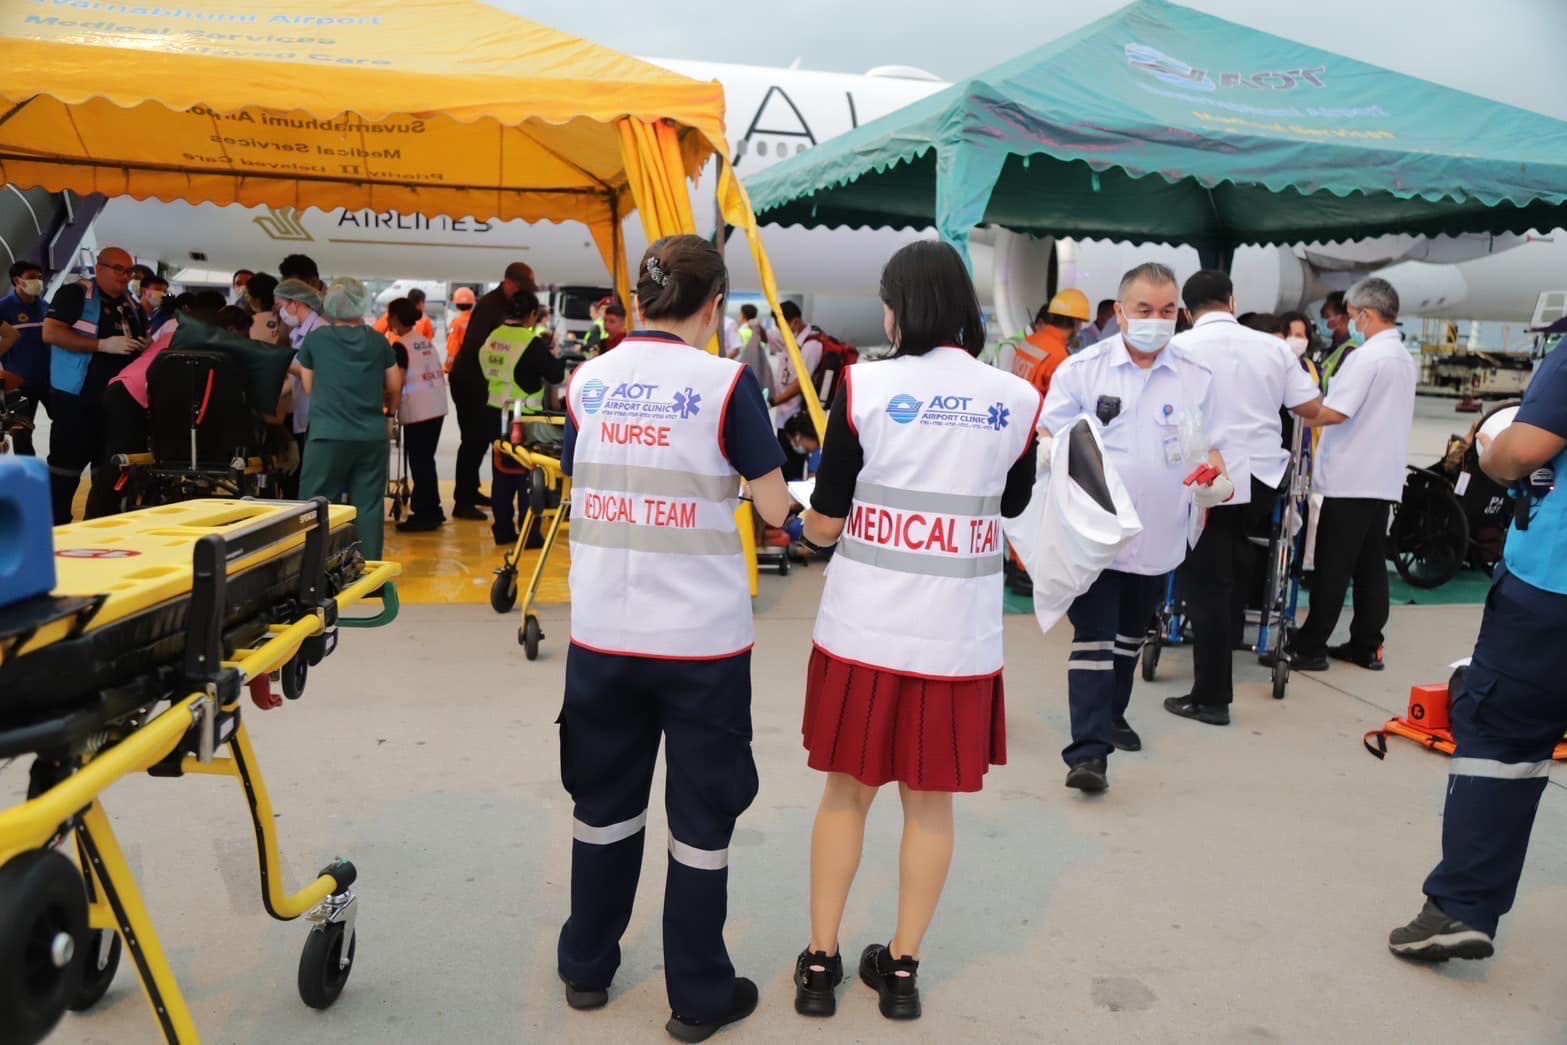 Zwei Mediziner stehen vor Zelten, die zur Behandlung der Verletzten des Singapore Airlines-Fluges 321 aufgestellt wurden.